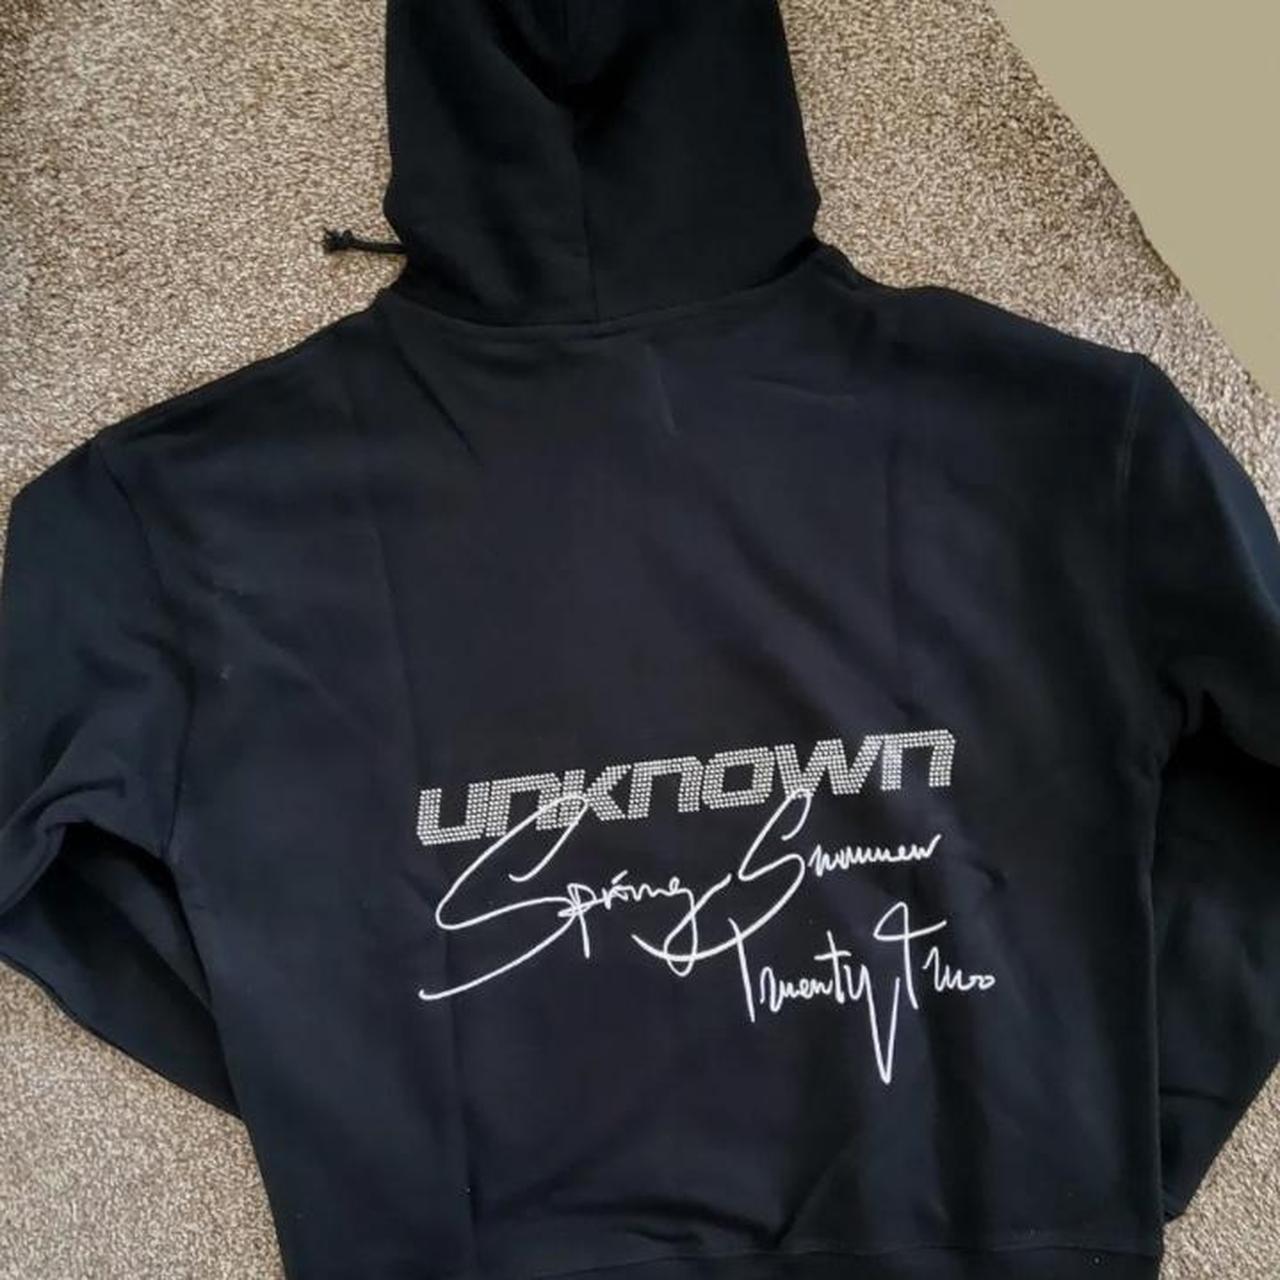 Unknown London. Spring Summer 22 hoodie. RRP £115. - Depop